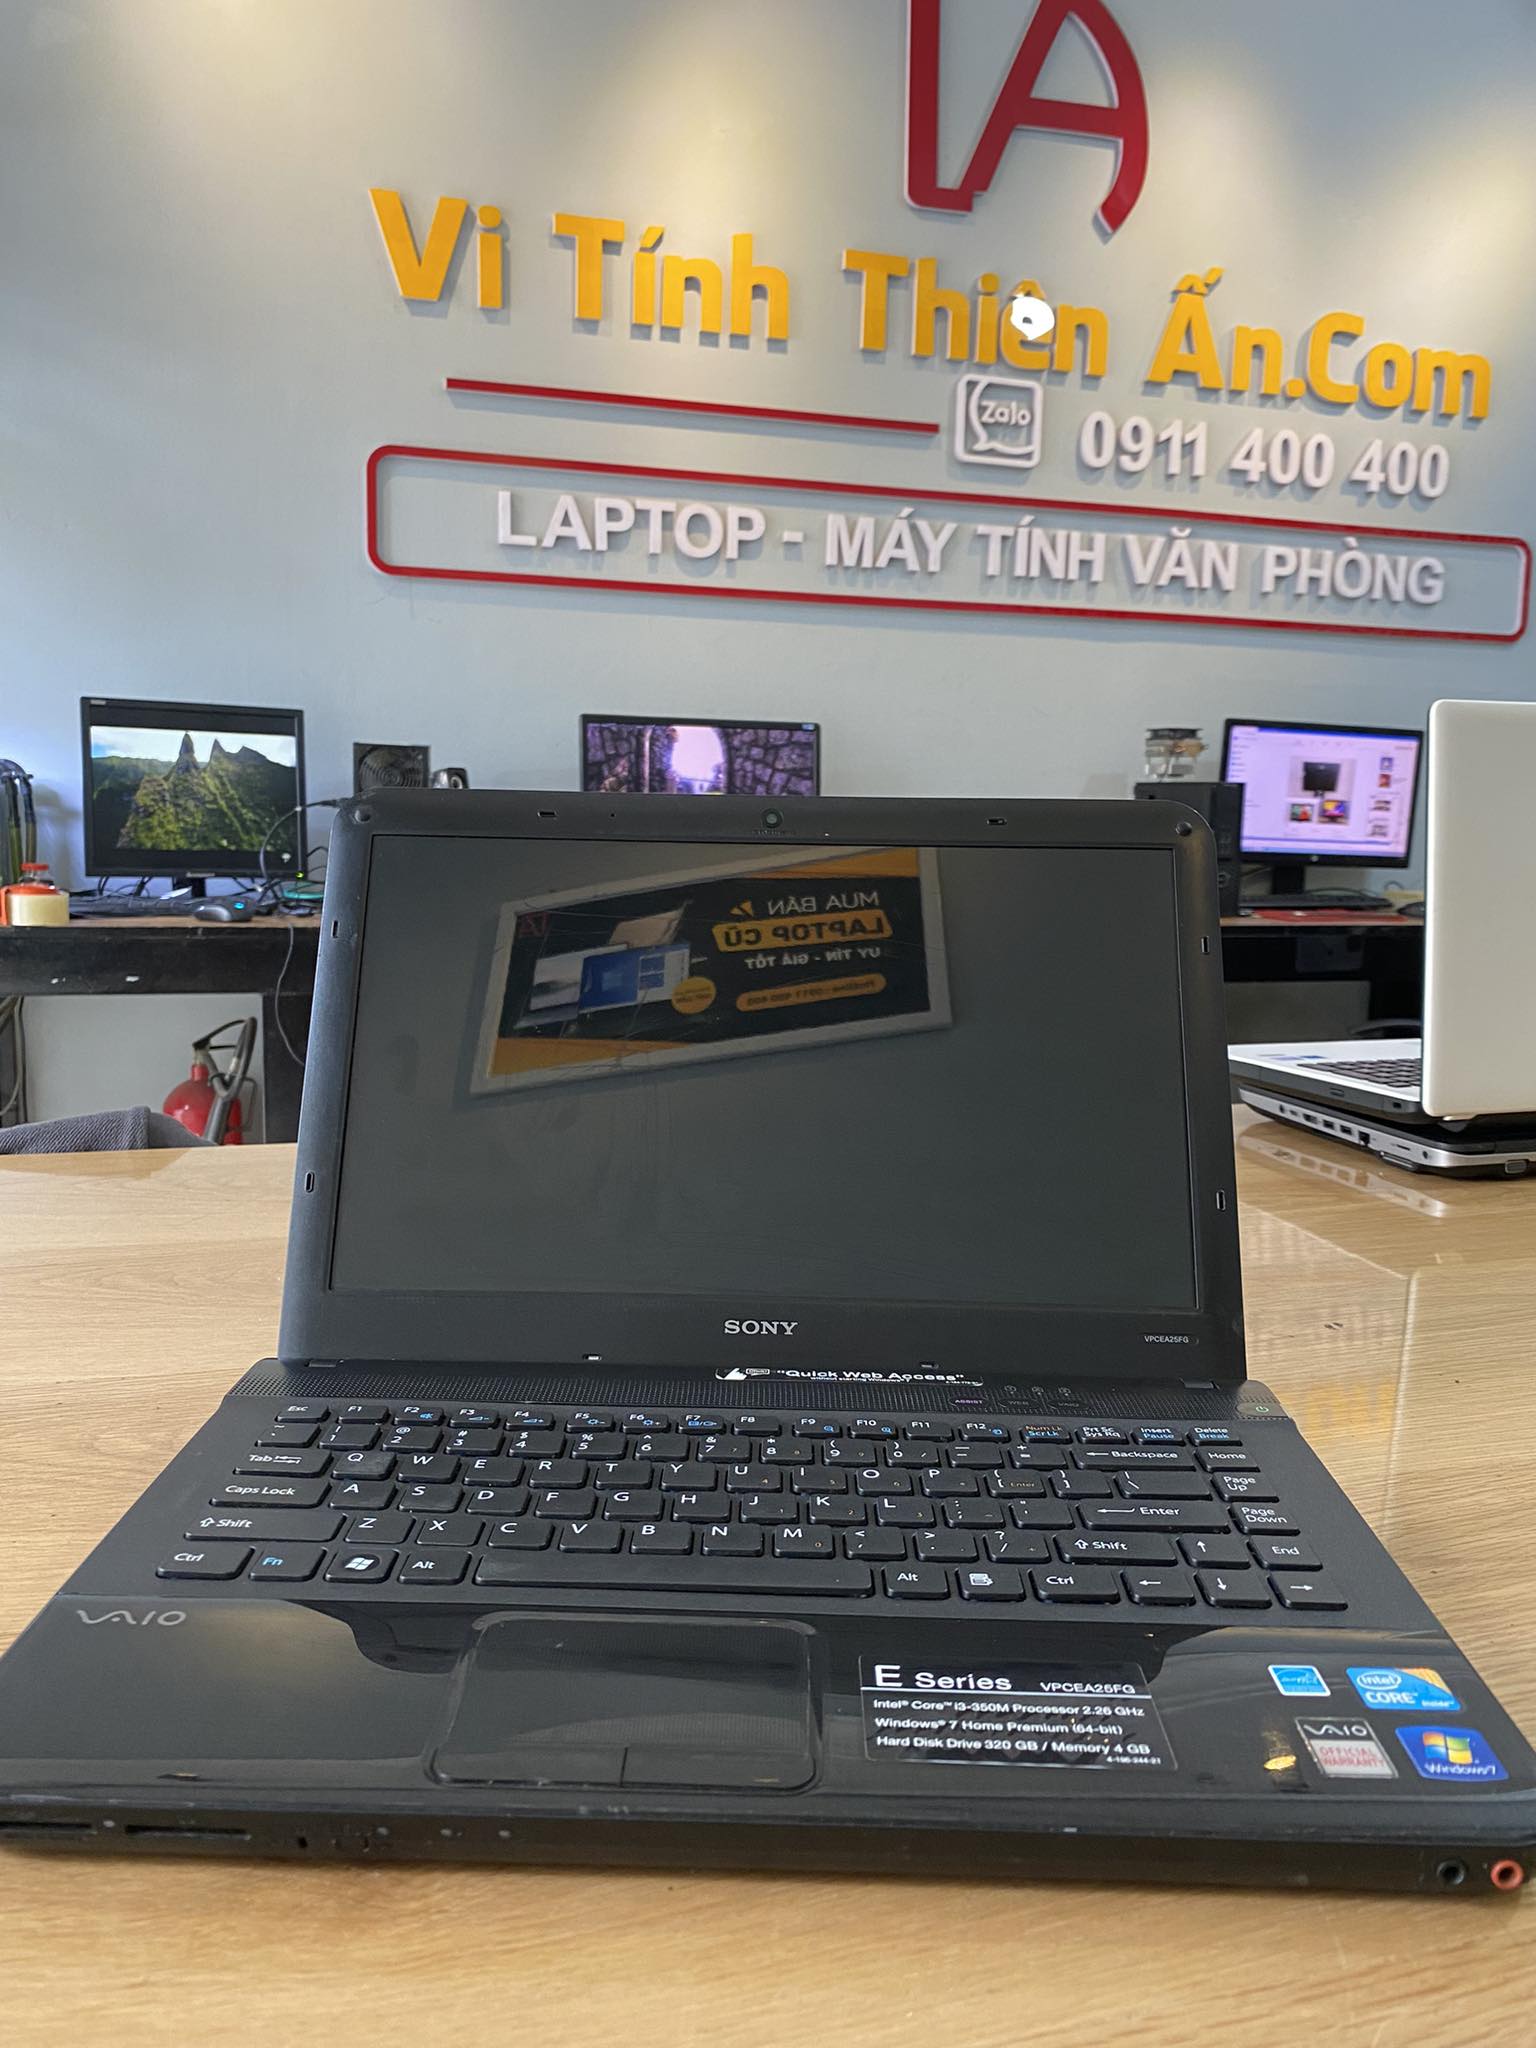 Laptop chạy i5 giá rẻ HP 840G2 i5 5300U/8GB/SSD 120GB